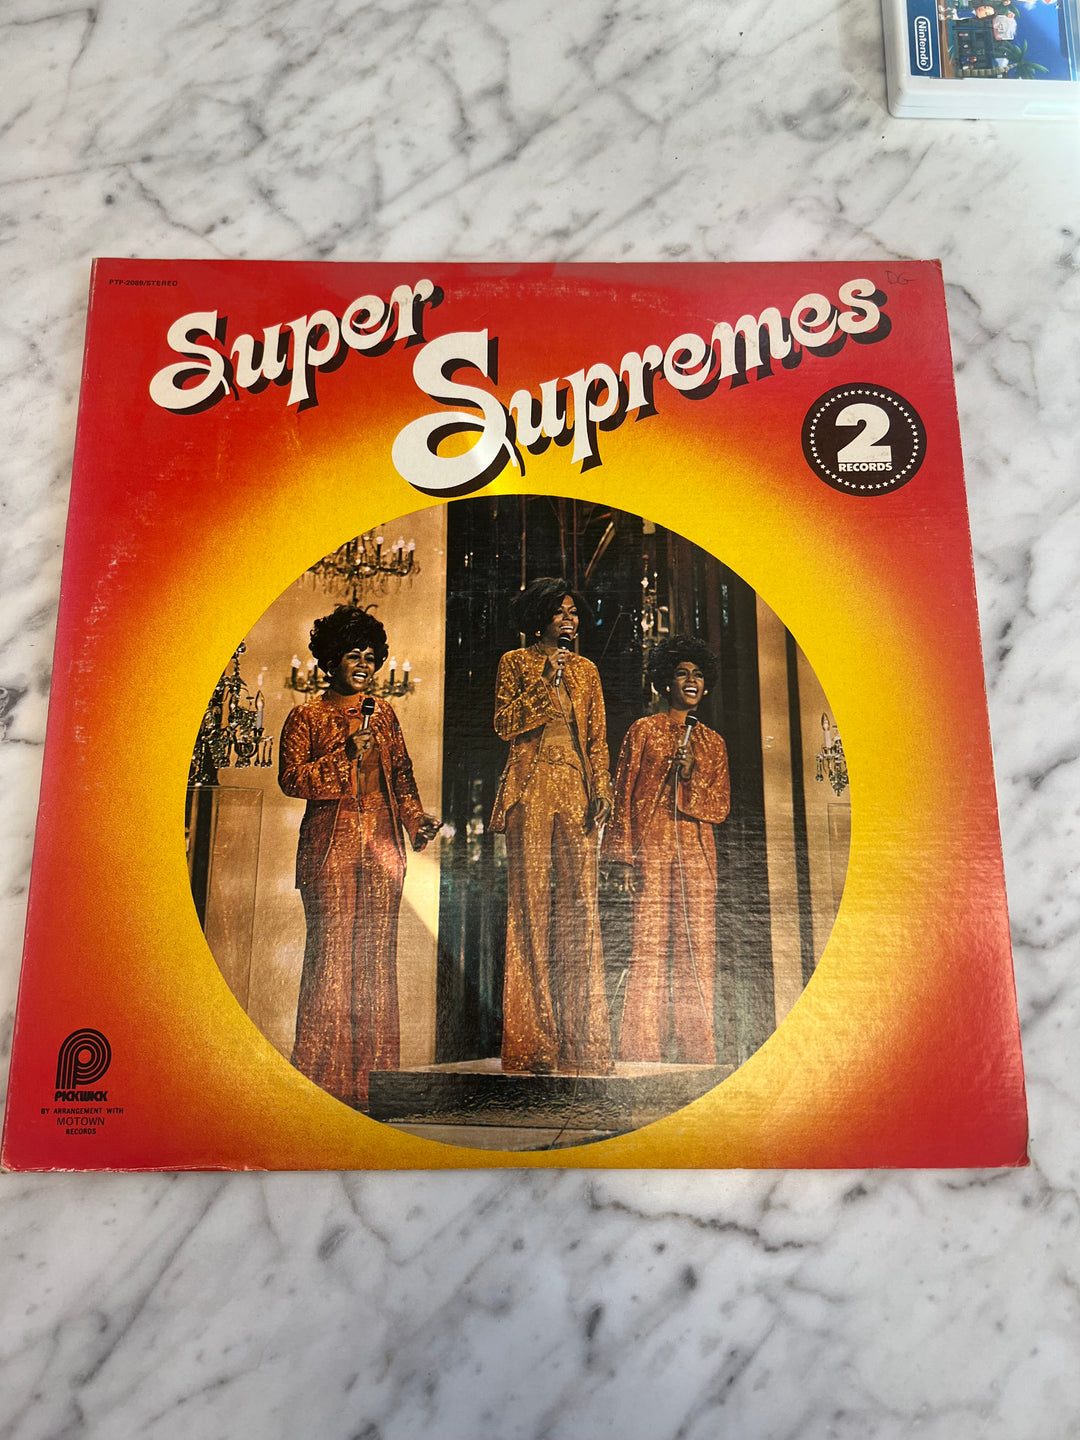 The Supremes - Super Supremes Vinyl Record